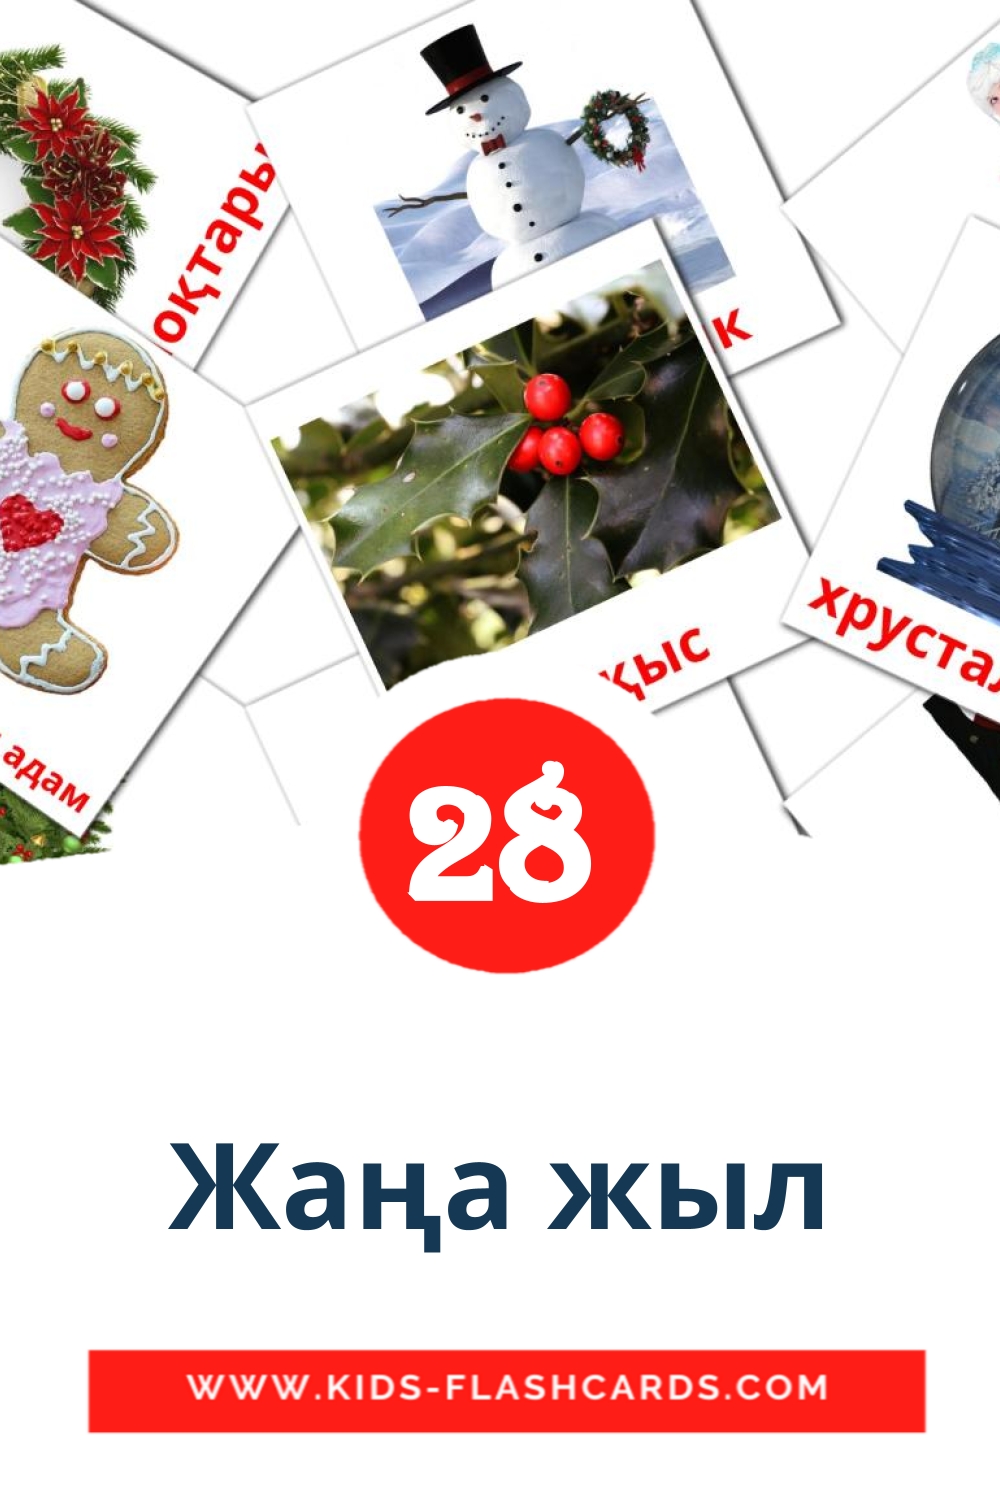 28 Жаңа жыл fotokaarten voor kleuters in het kazakh